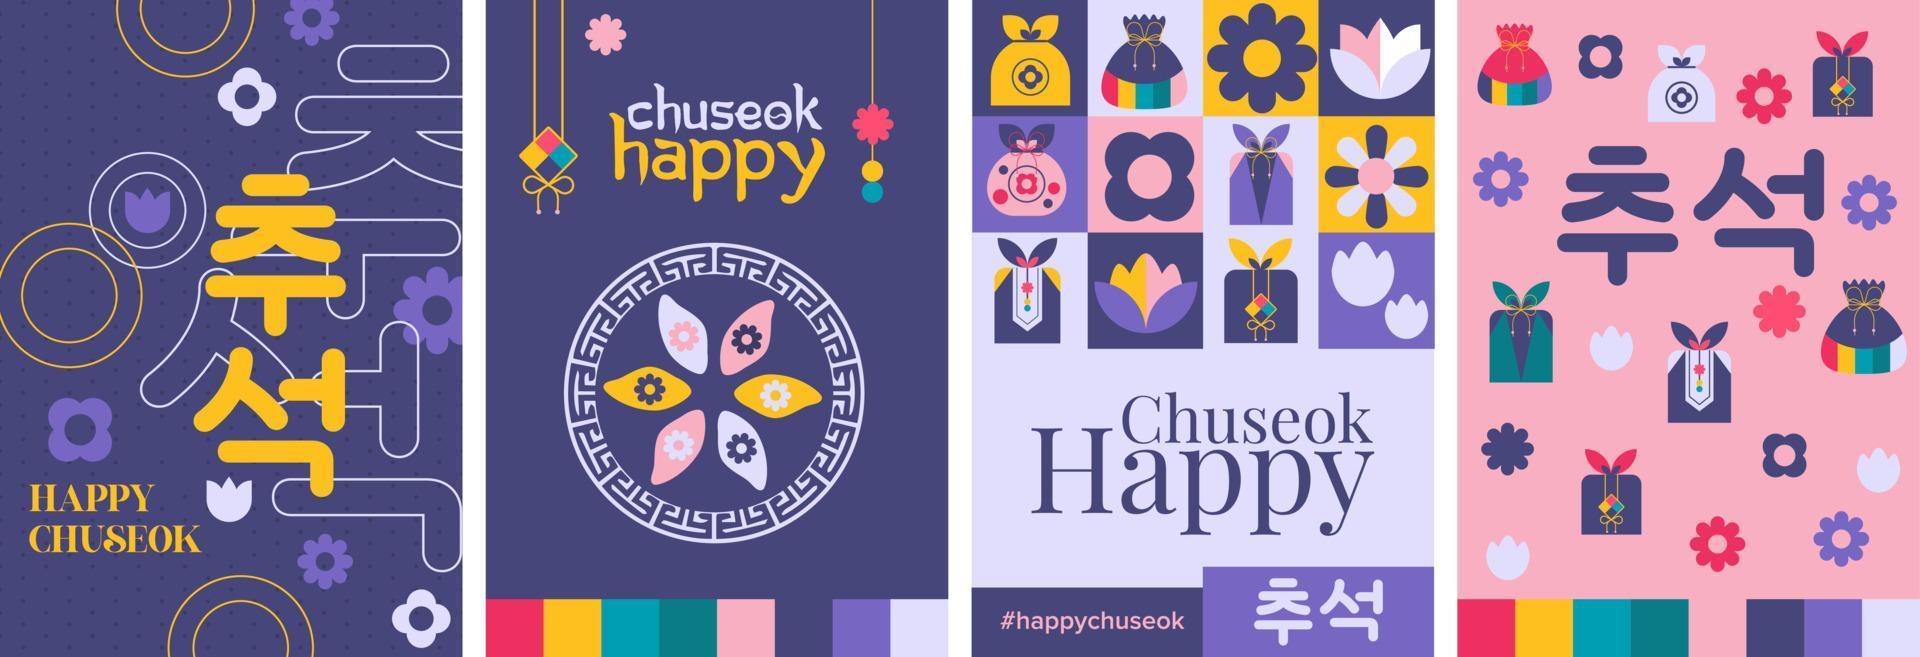 poster geometrico felice chuseok, biglietto di auguri, copertina del libro. raccolta di vettore del set di calligrafia chuseok del ringraziamento coreano.